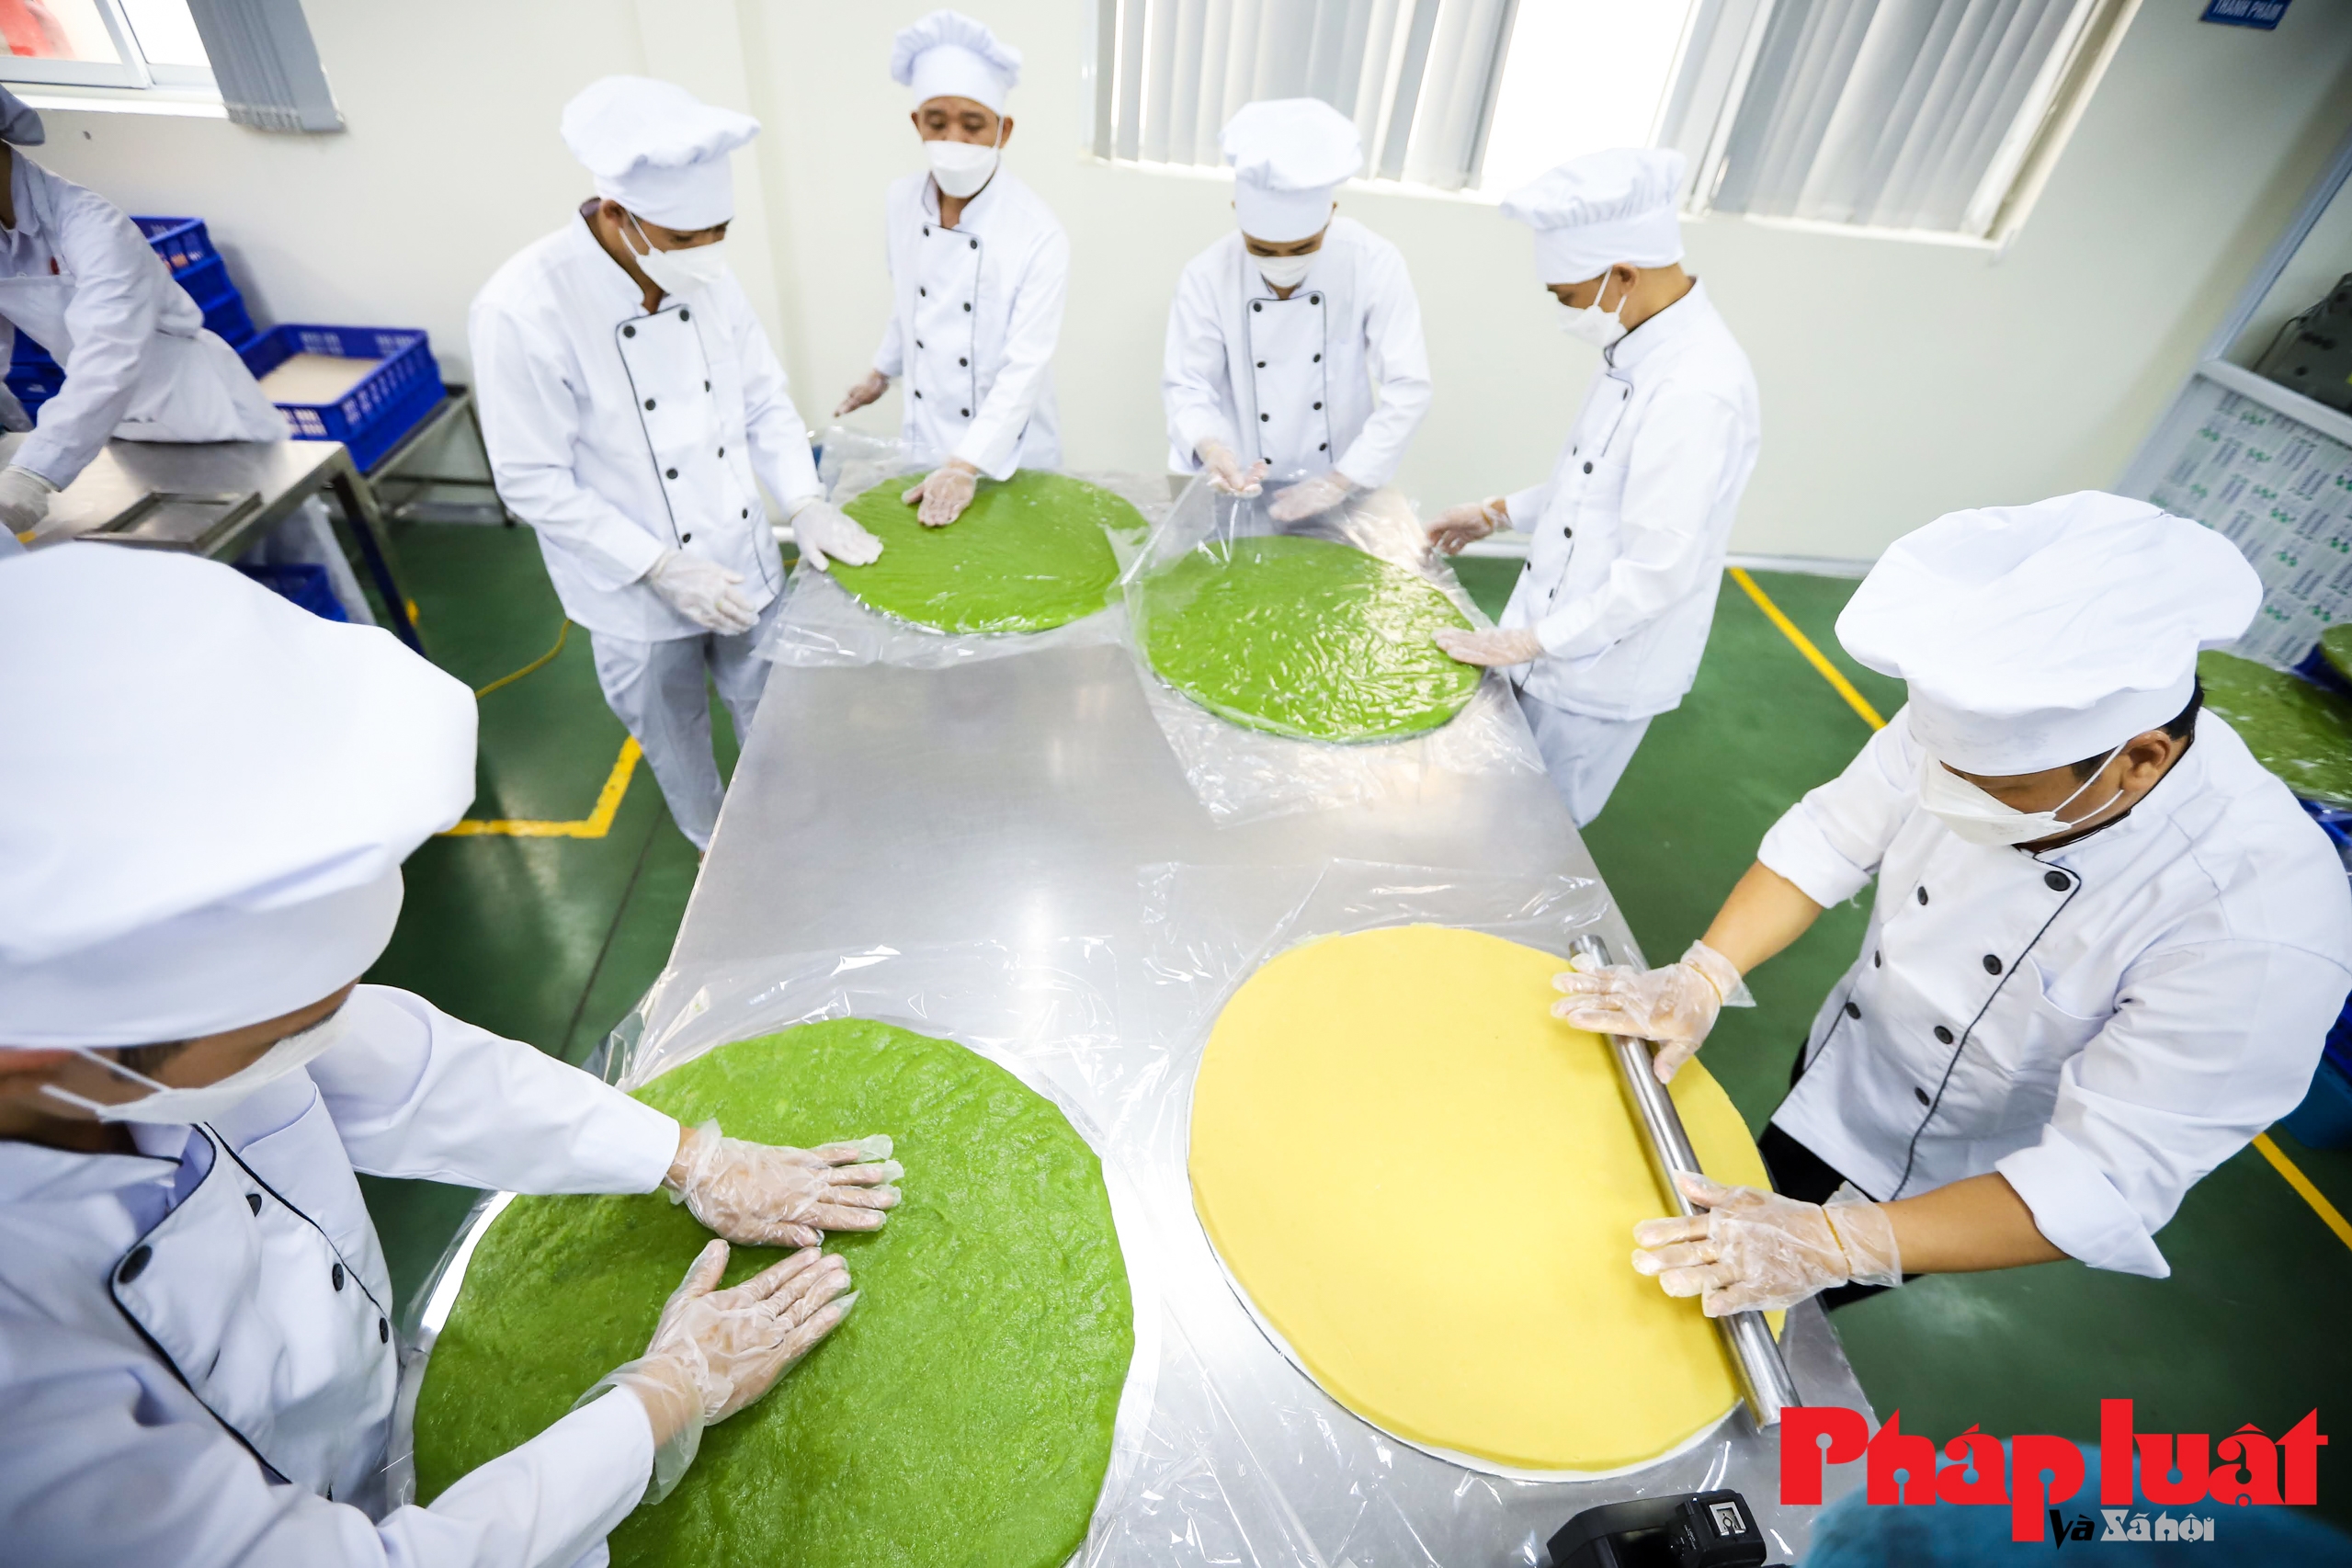 Cận cảnh công đoạn sản xuất cặp bánh cưới kỷ lục Việt Nam